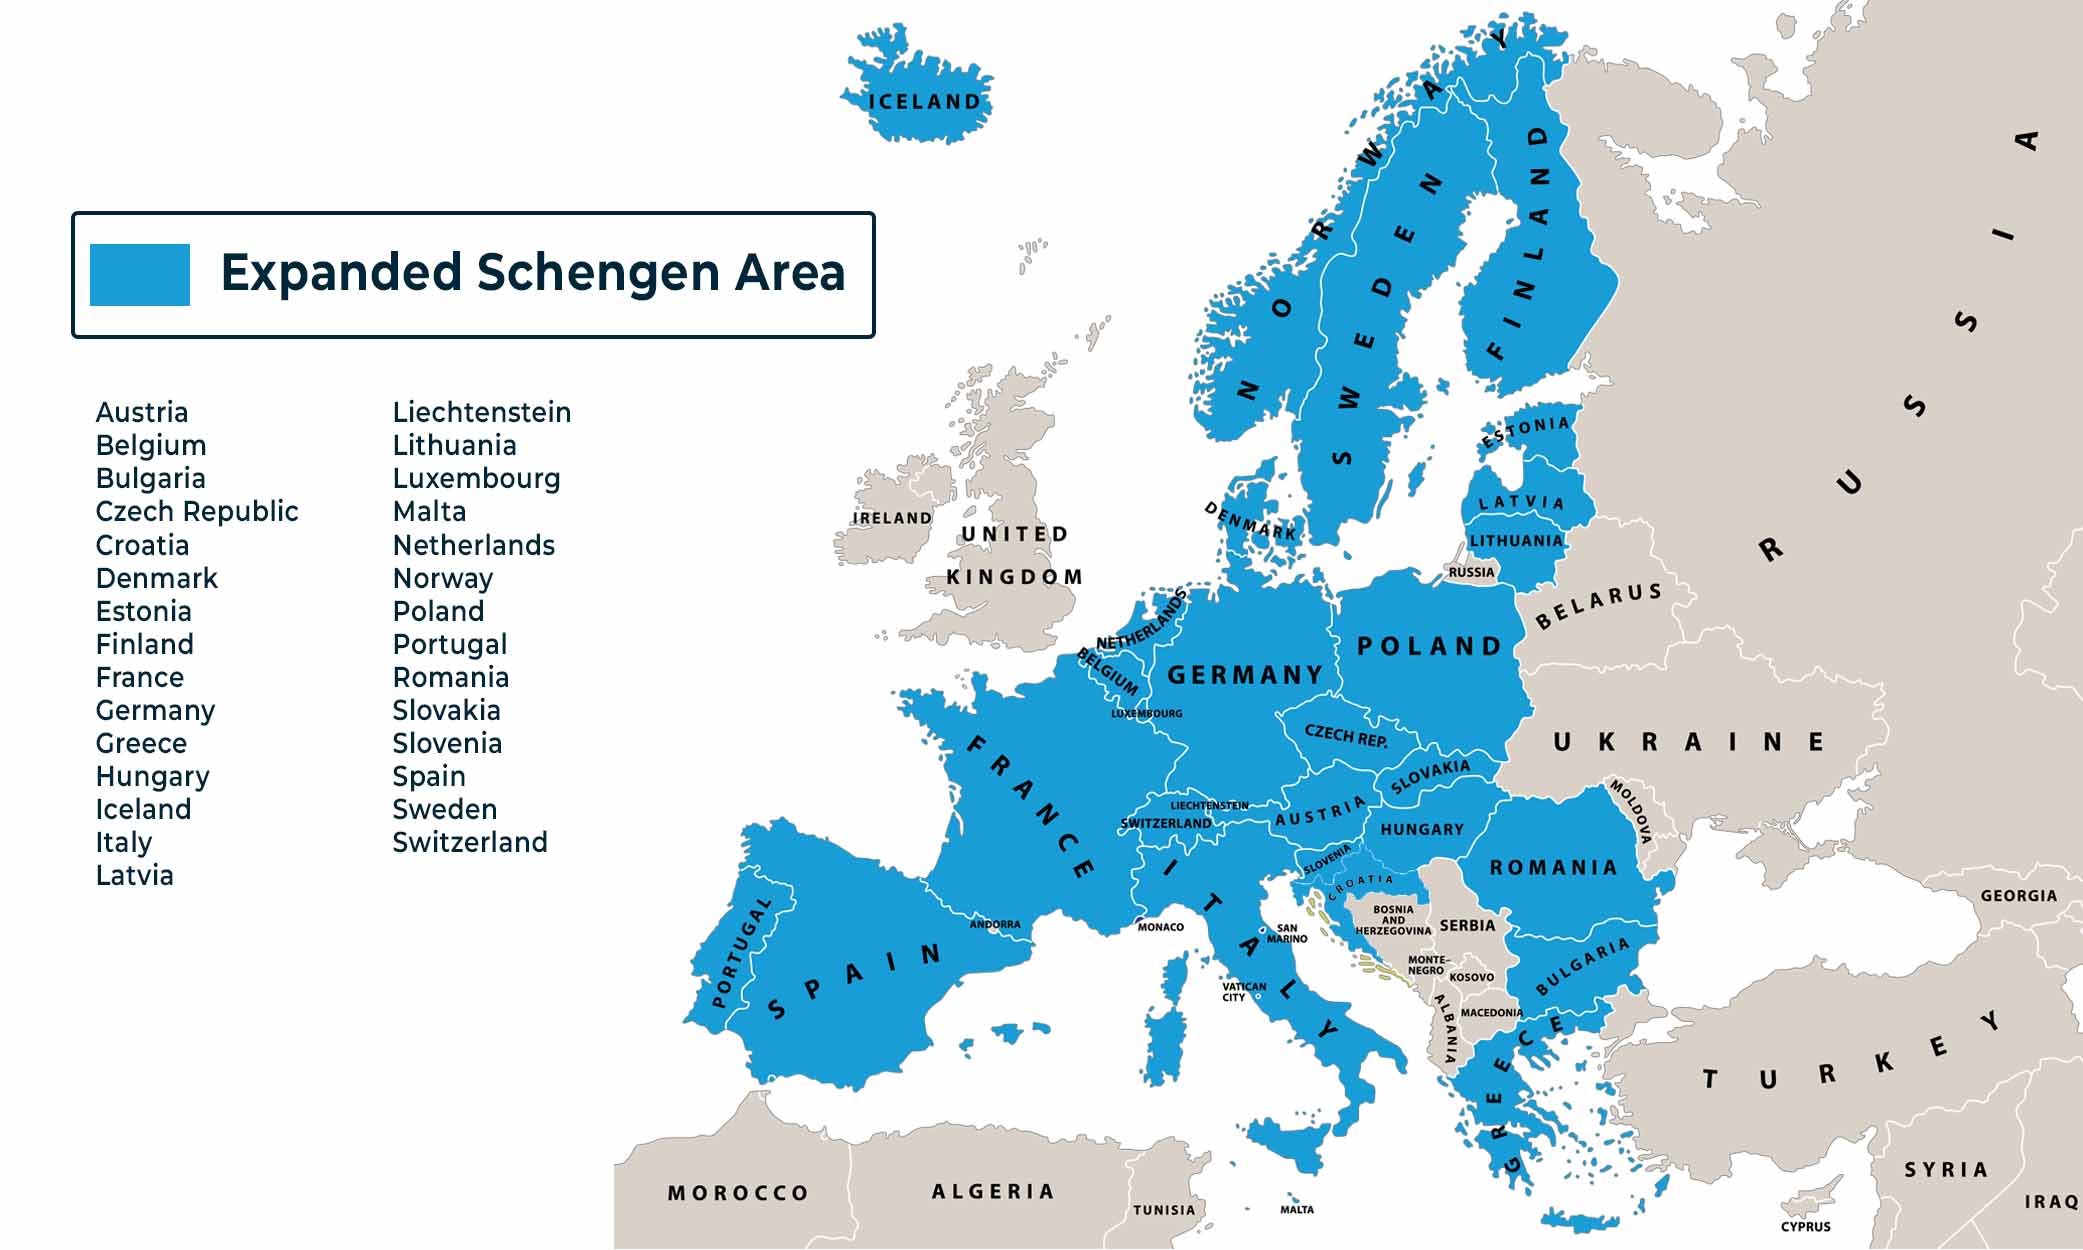 Bulgaristan ve Romanya'nın Schengen Bölgesi'ne katılımı hakkında bilgi edinin.